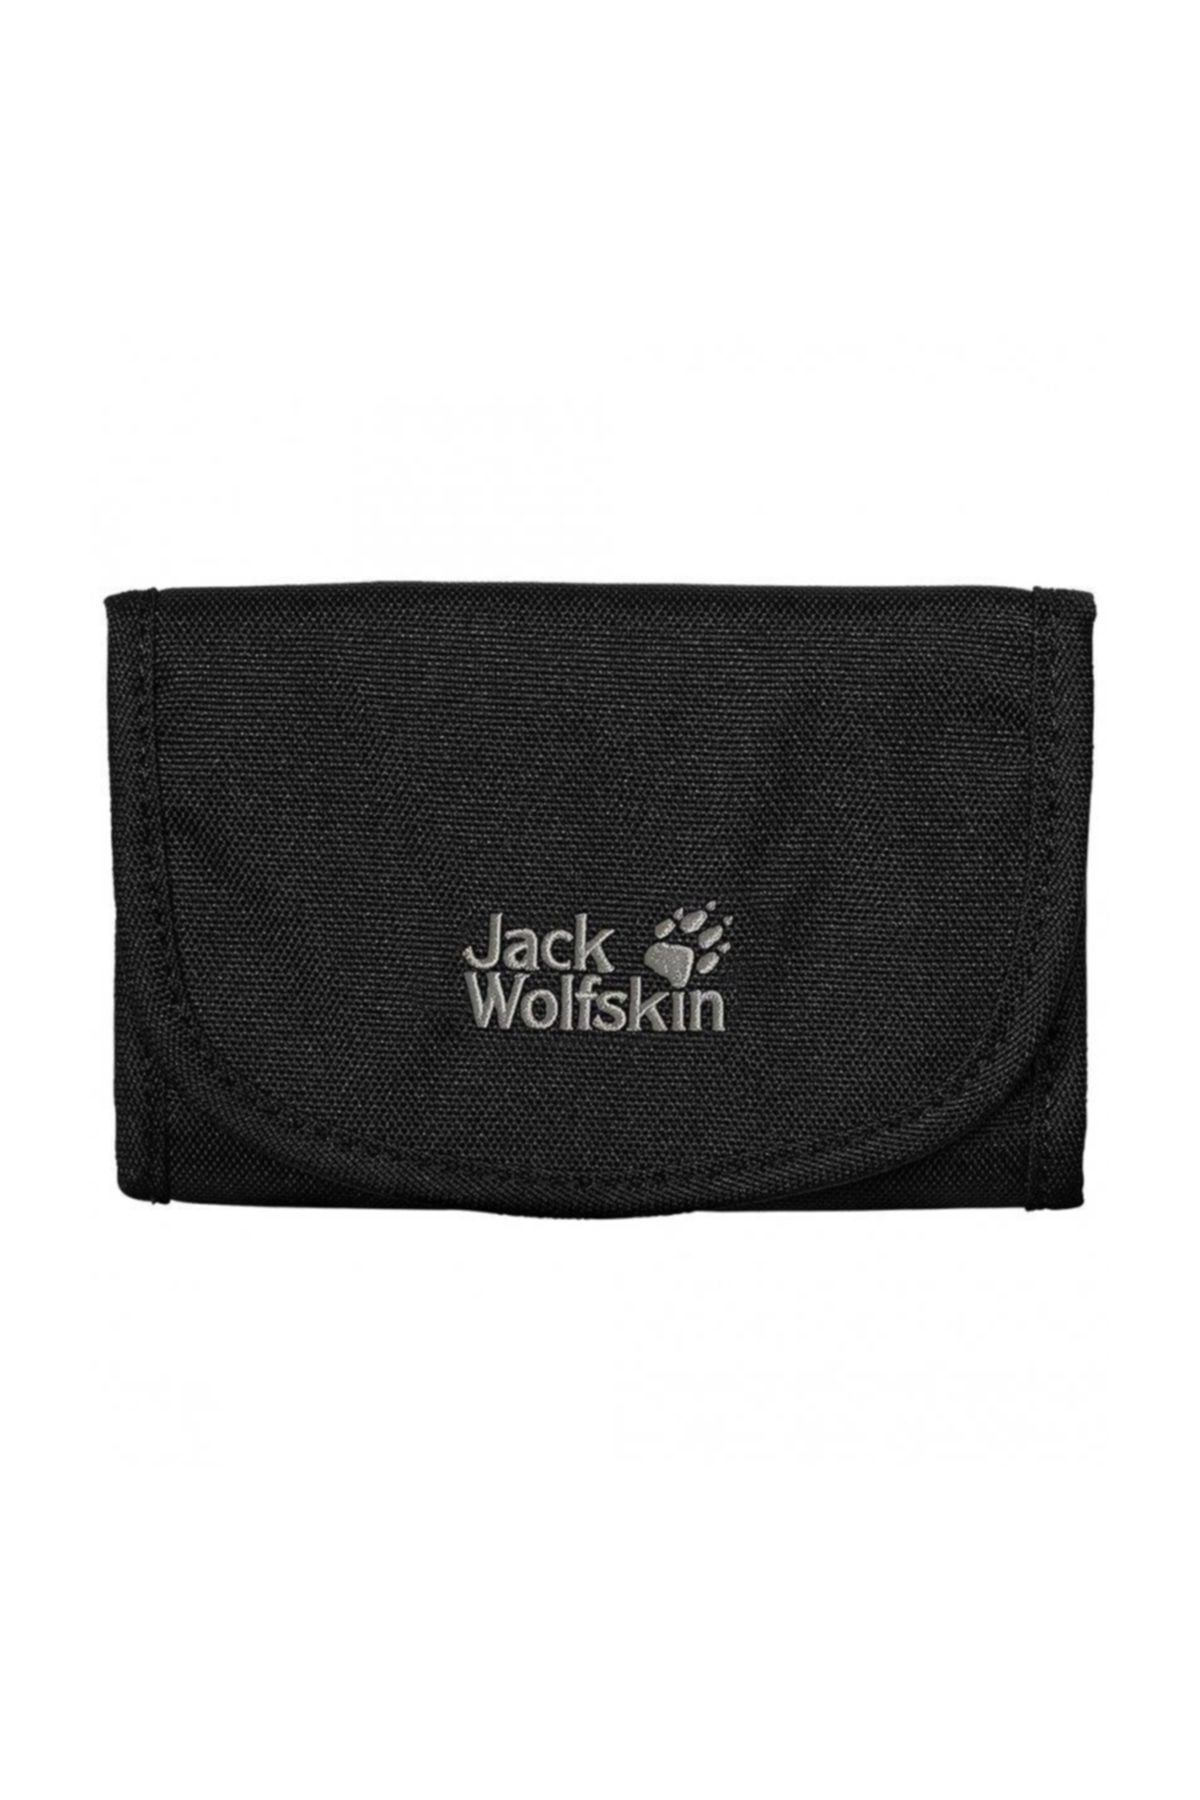 Jack Wolfskin Mobile Bank Cüzdan